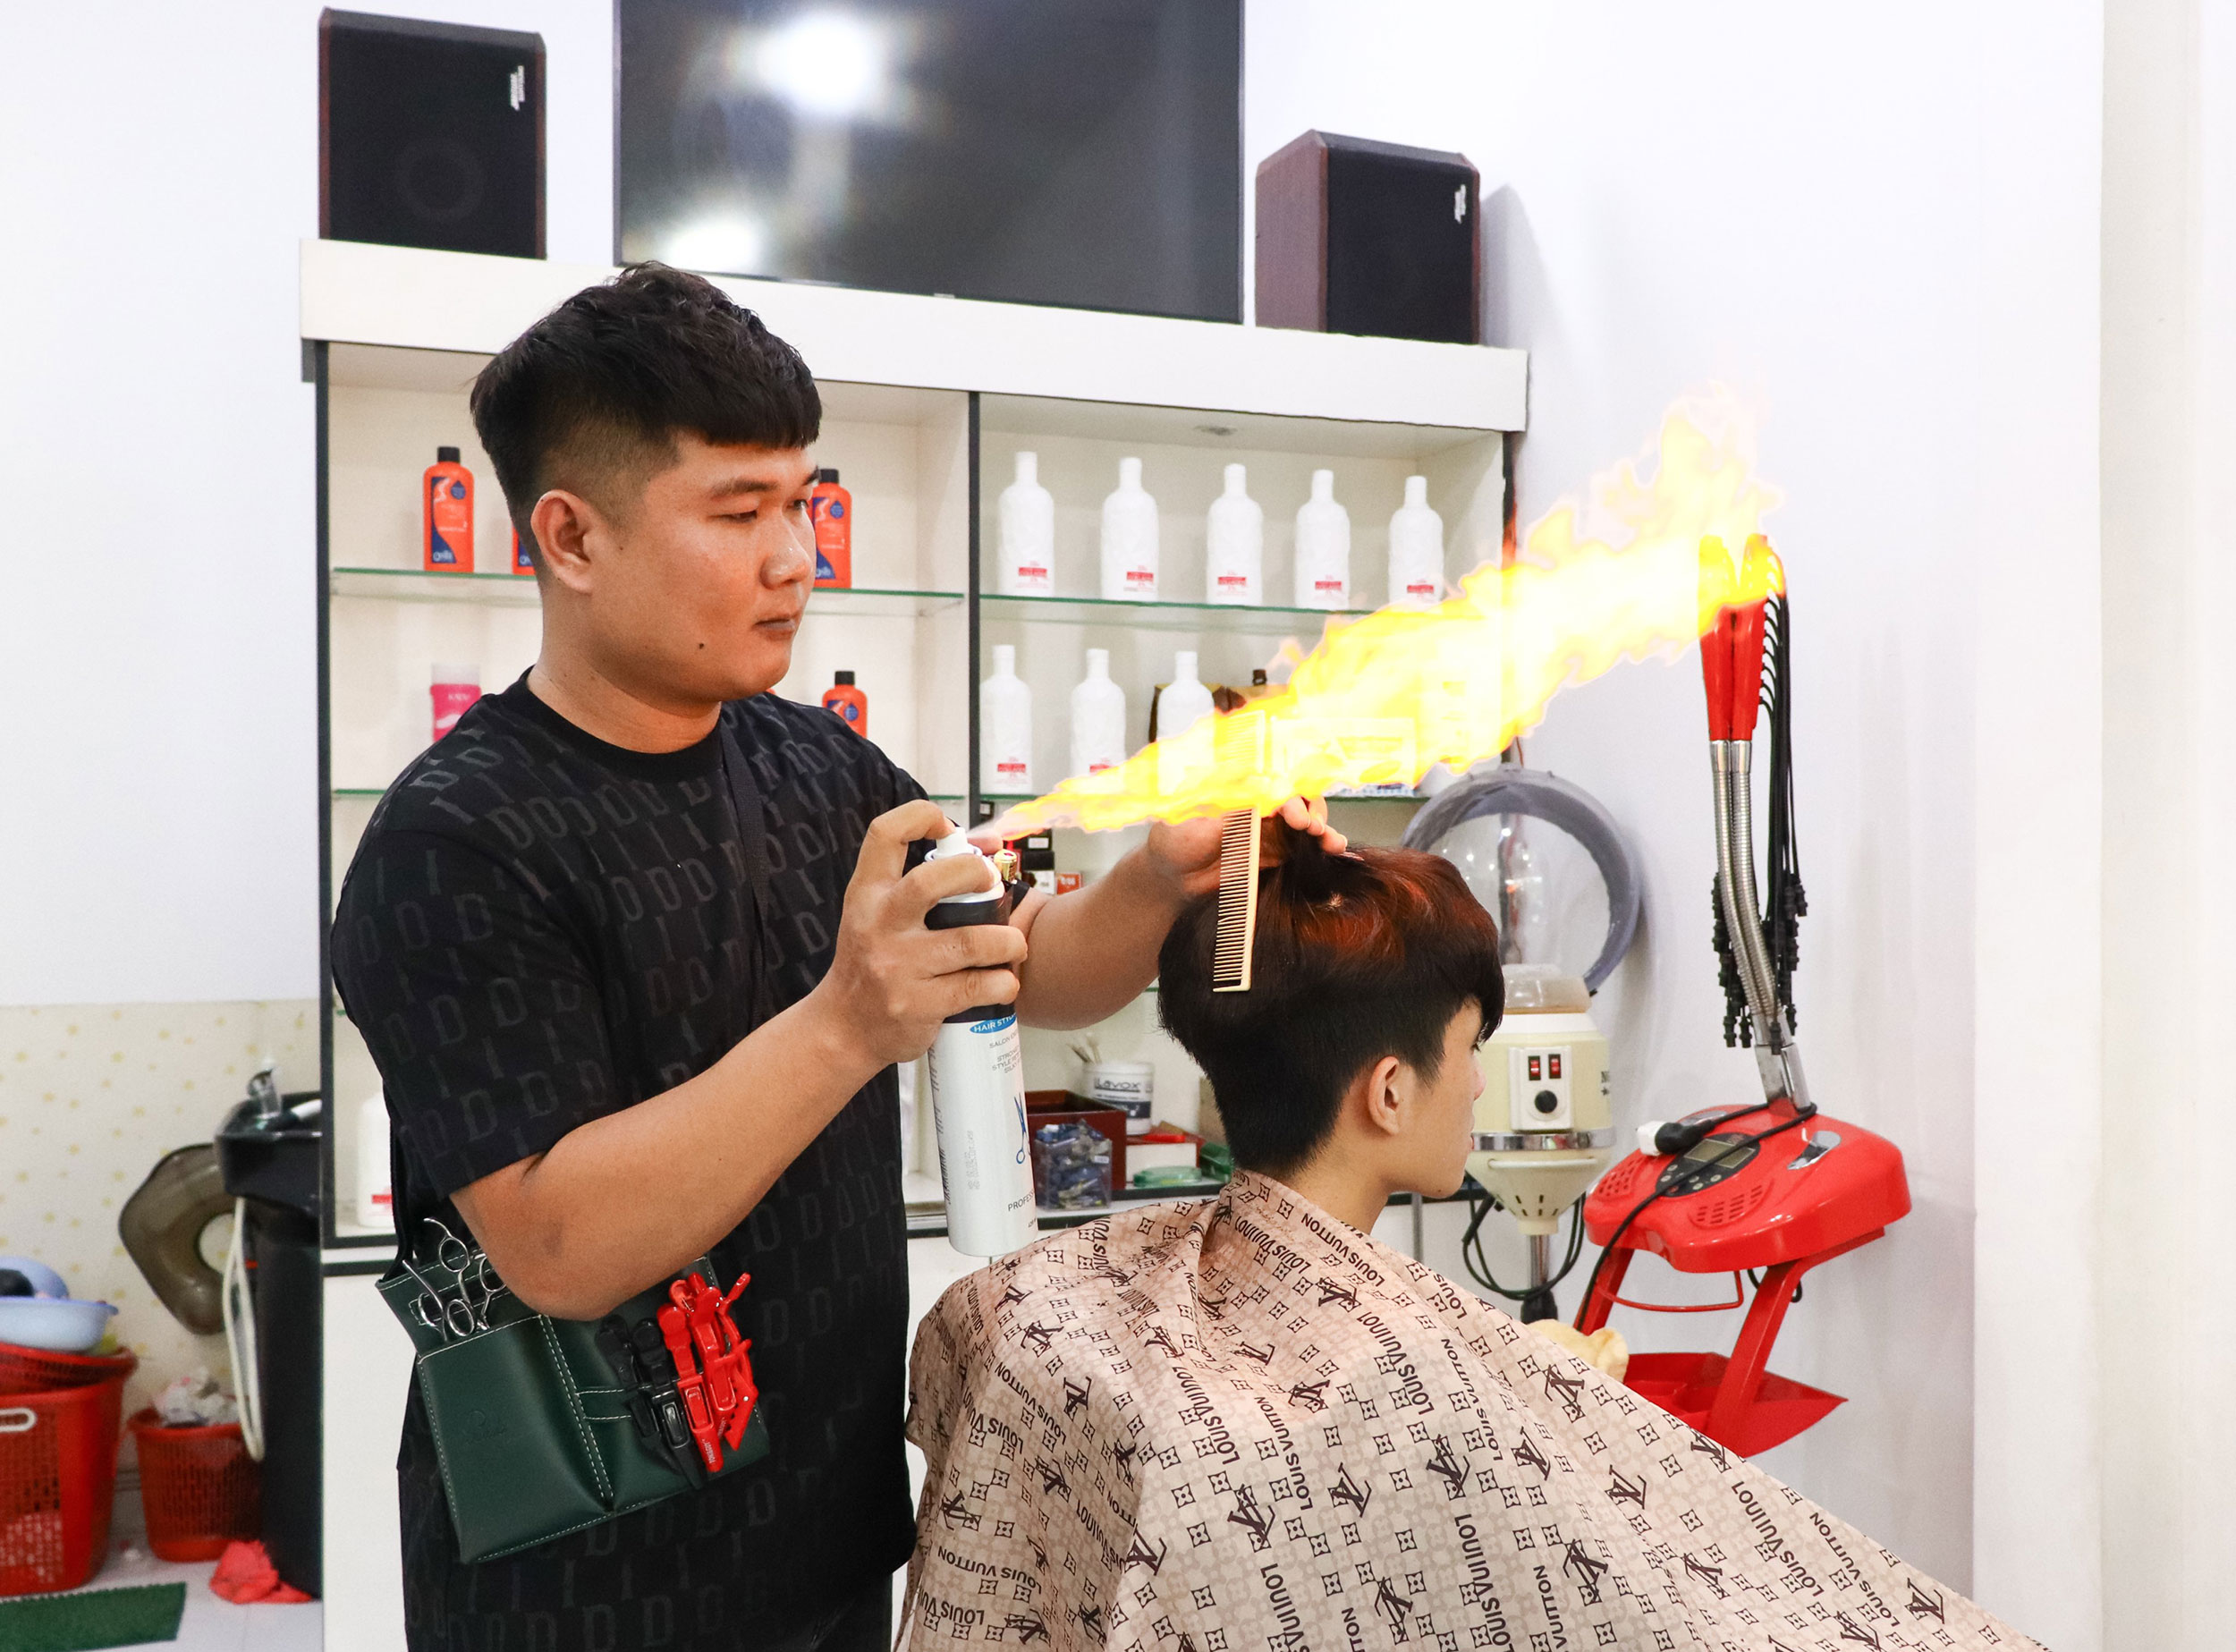 CẮT TÓC BẰNG CỮ DỂ LÀM  Chia Sẻ Cắt Kiểu Tóc Chân Phương Đơn Giản  Học Cắt  Tóc  Mens Haircut  YouTube